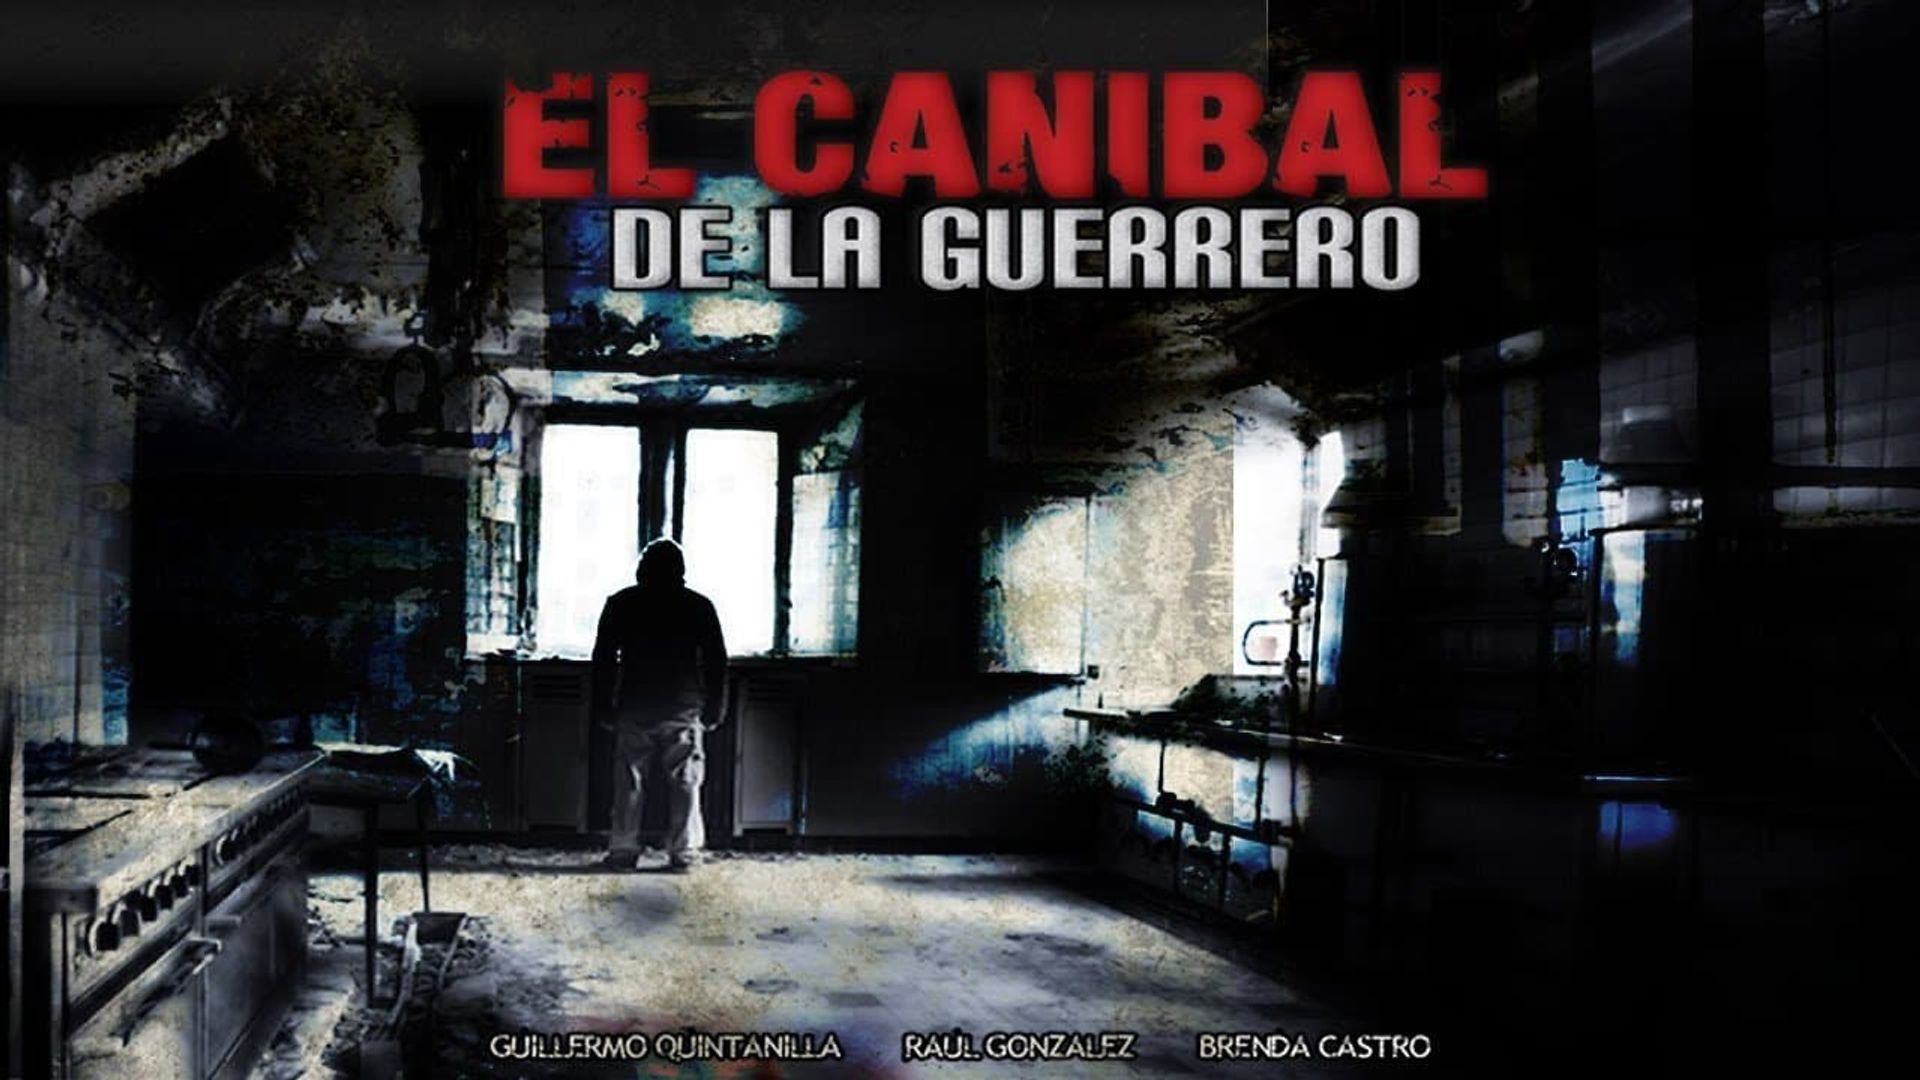 El caníbal de la Guerrero background